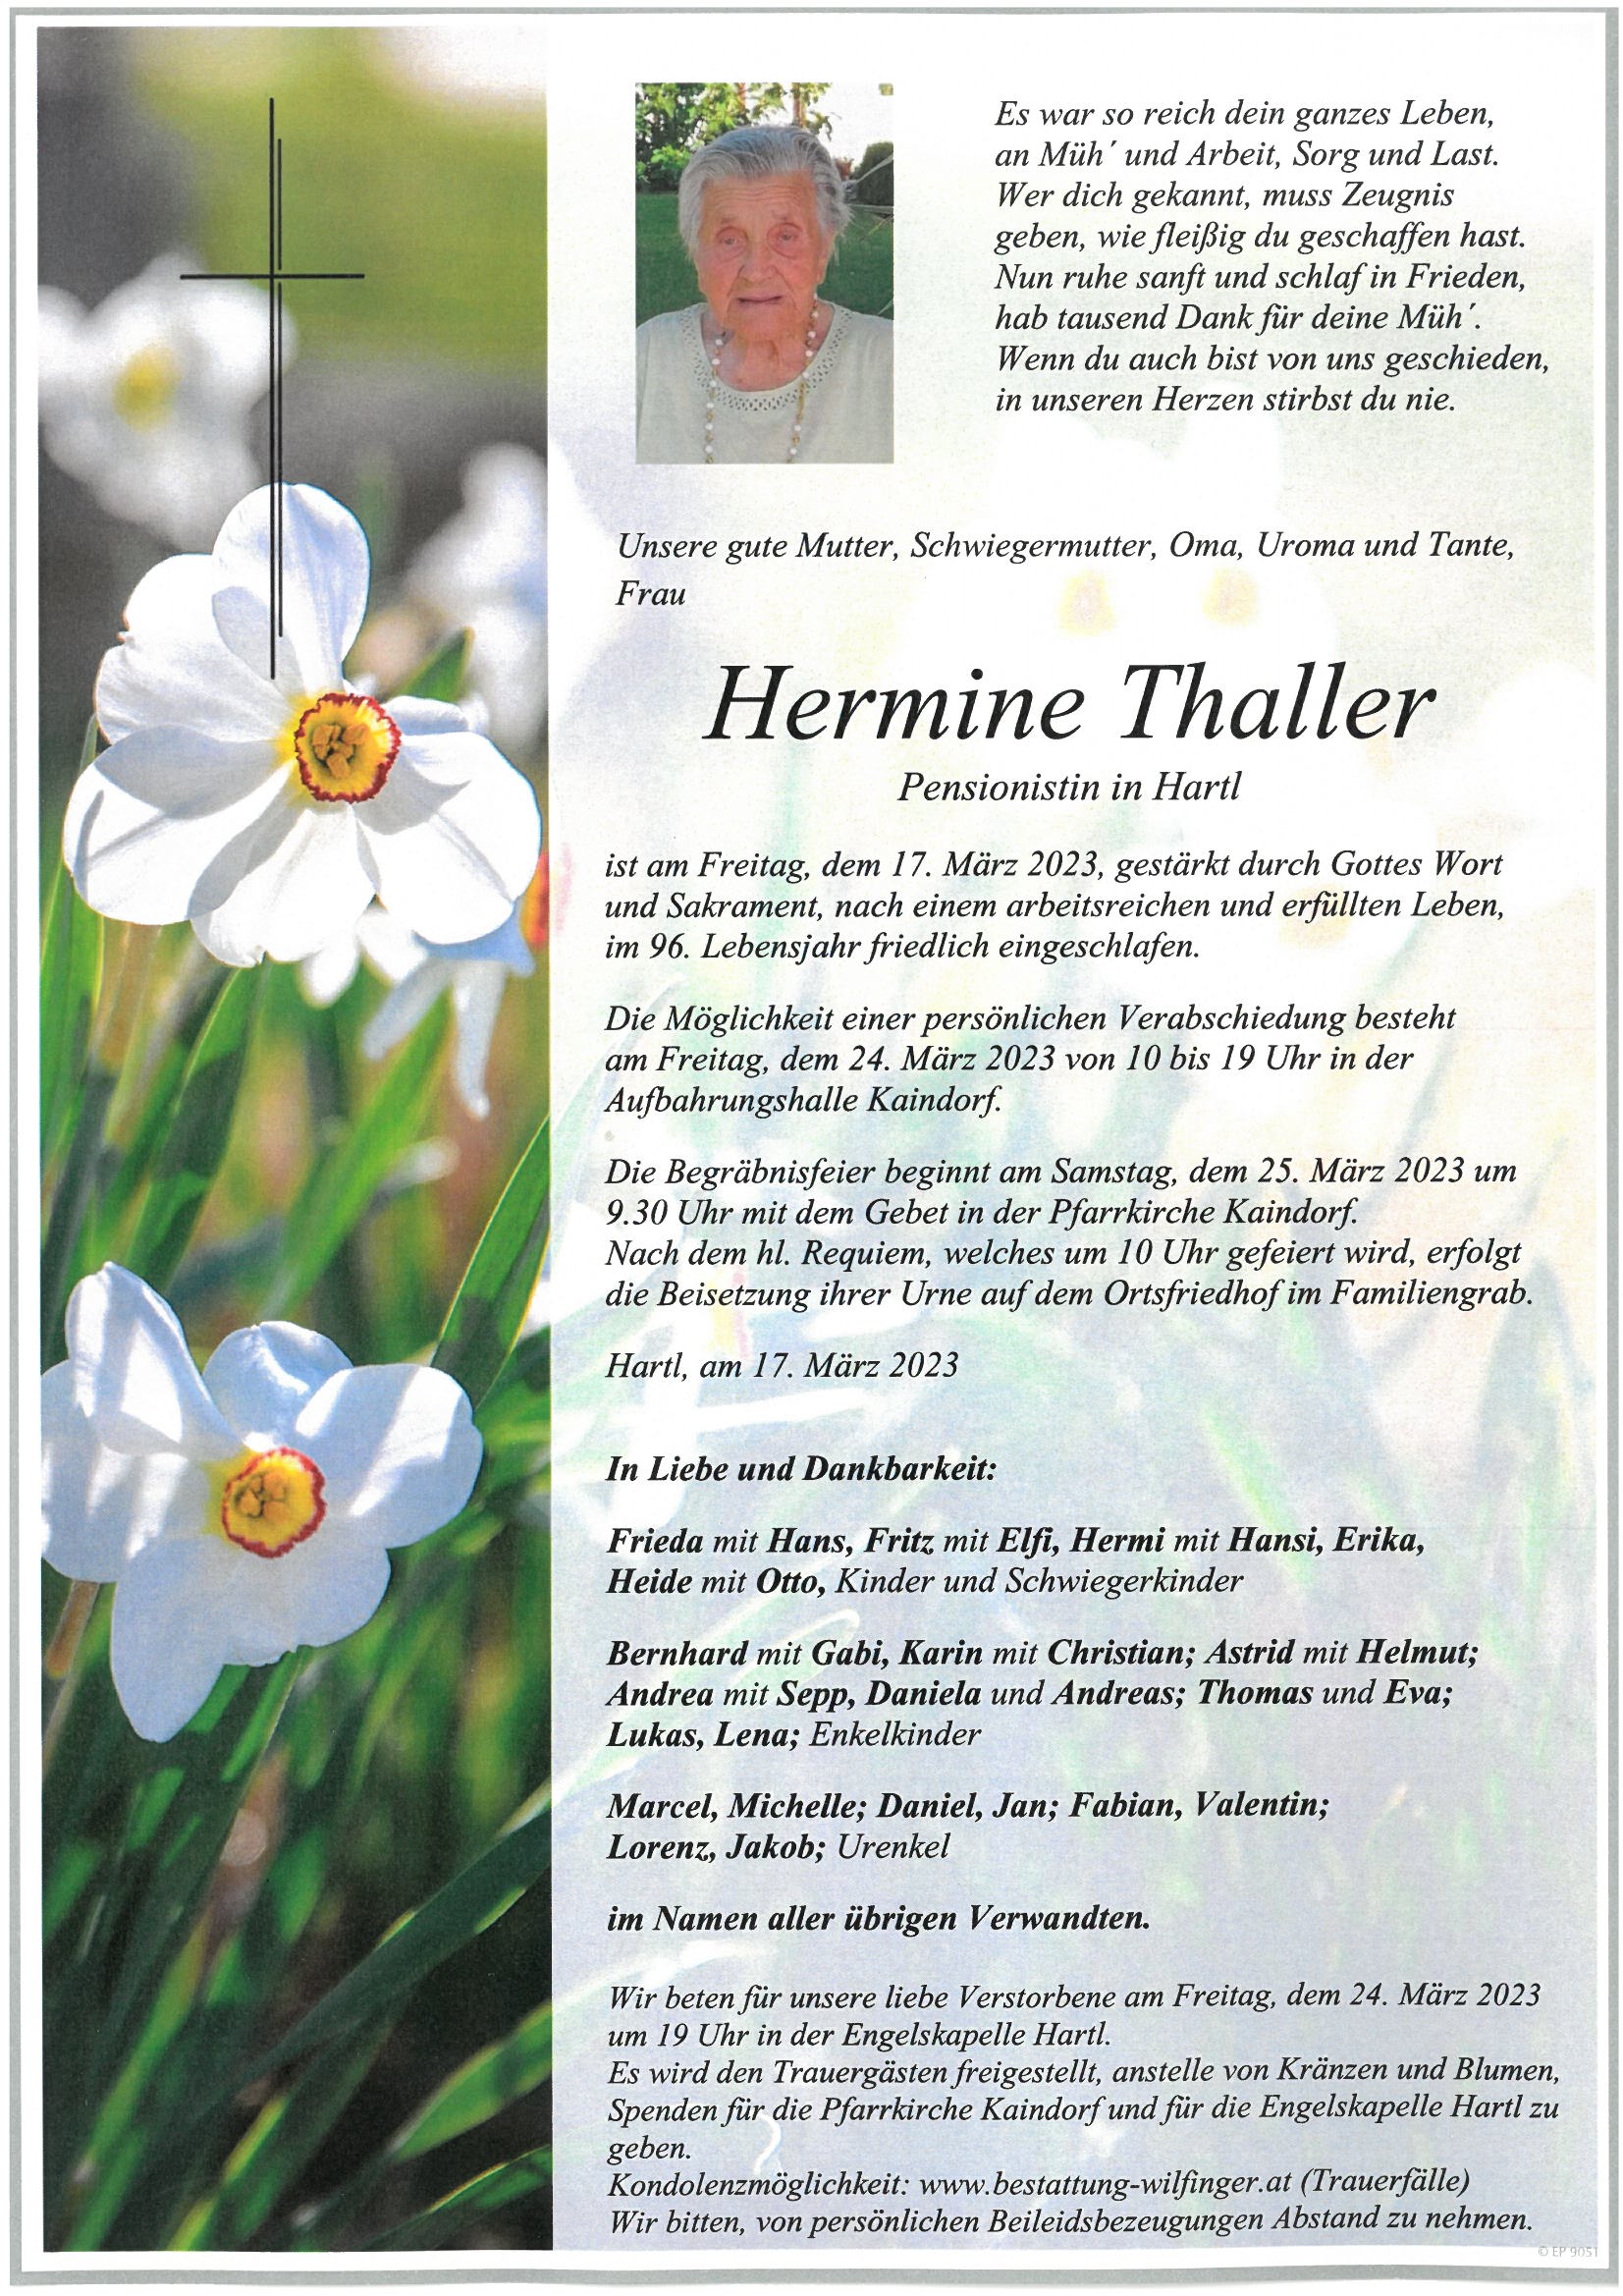 Hermine Thaller, Hartl